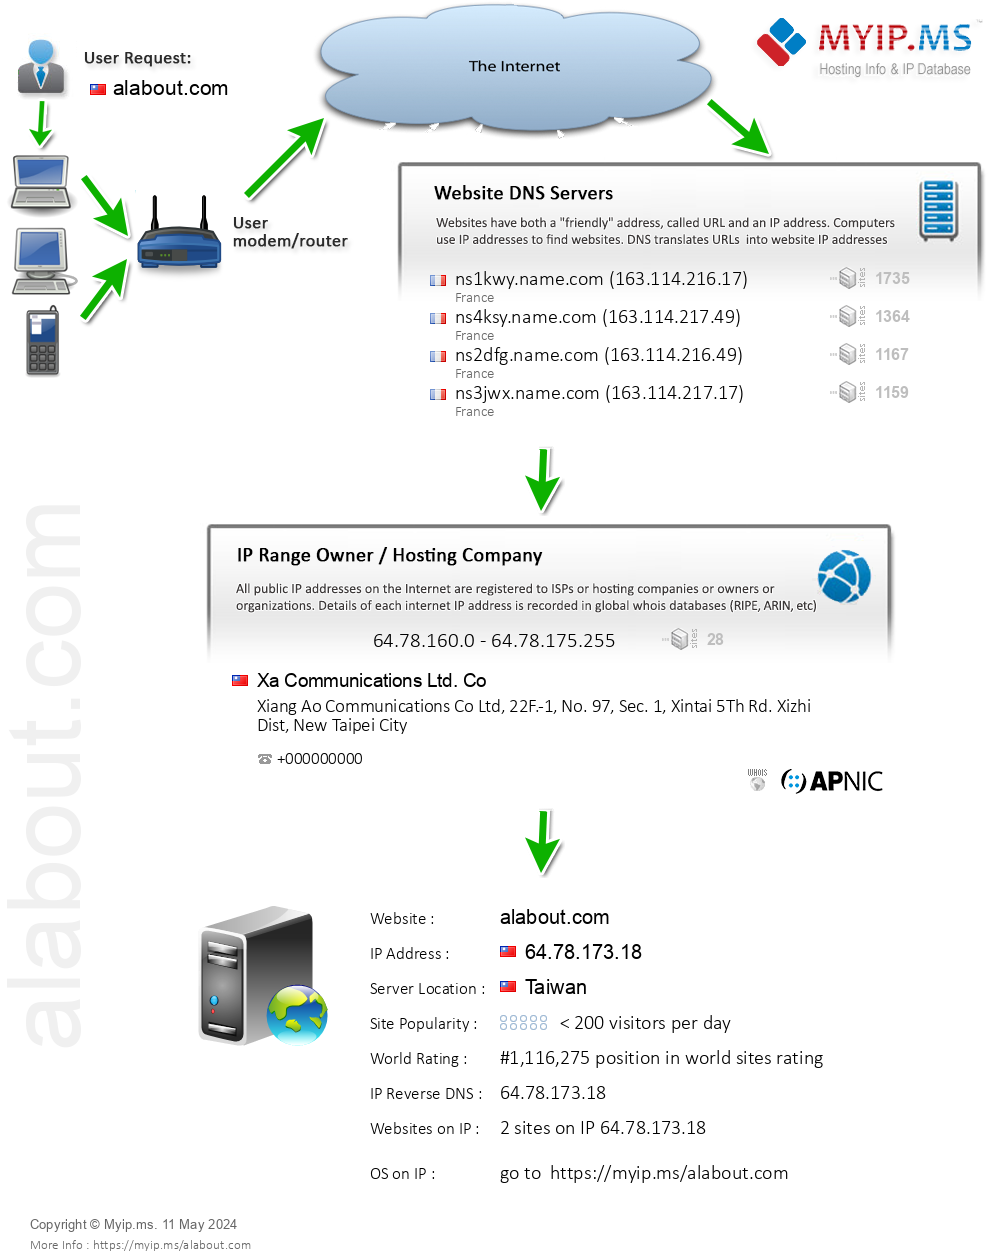 Alabout.com - Website Hosting Visual IP Diagram